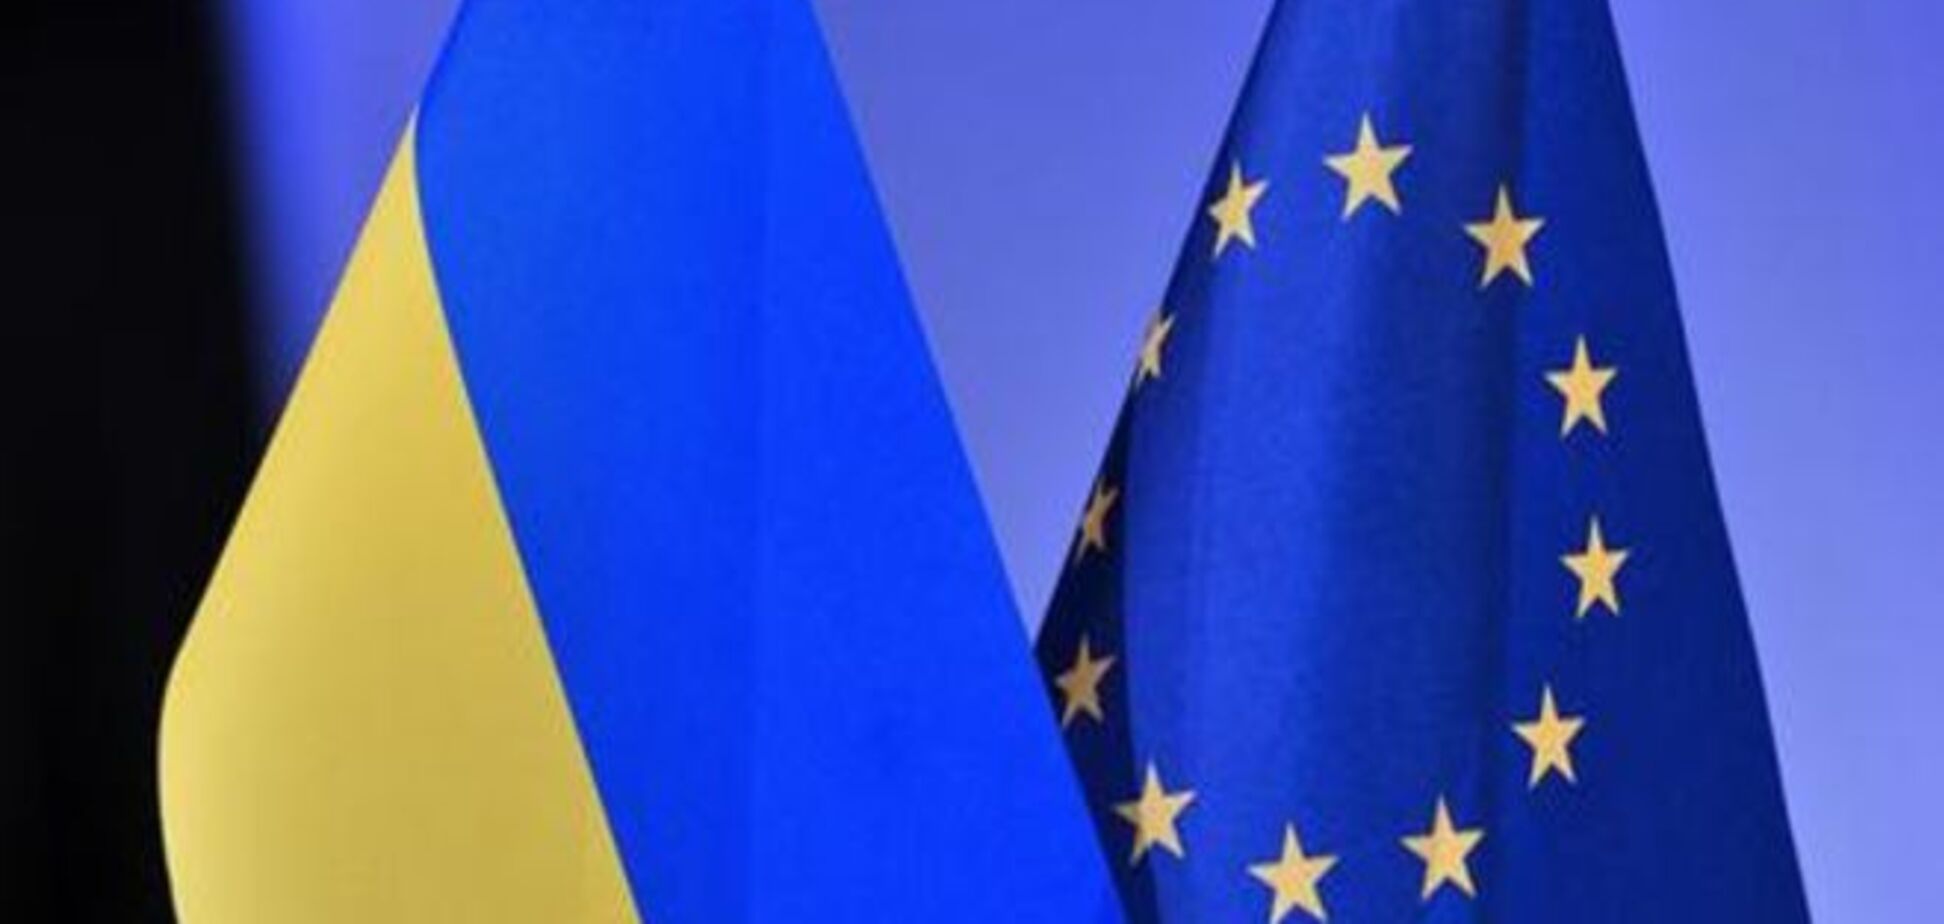 Єврокомісія виділила Україні кредит обсягом 600 мільйонів євро